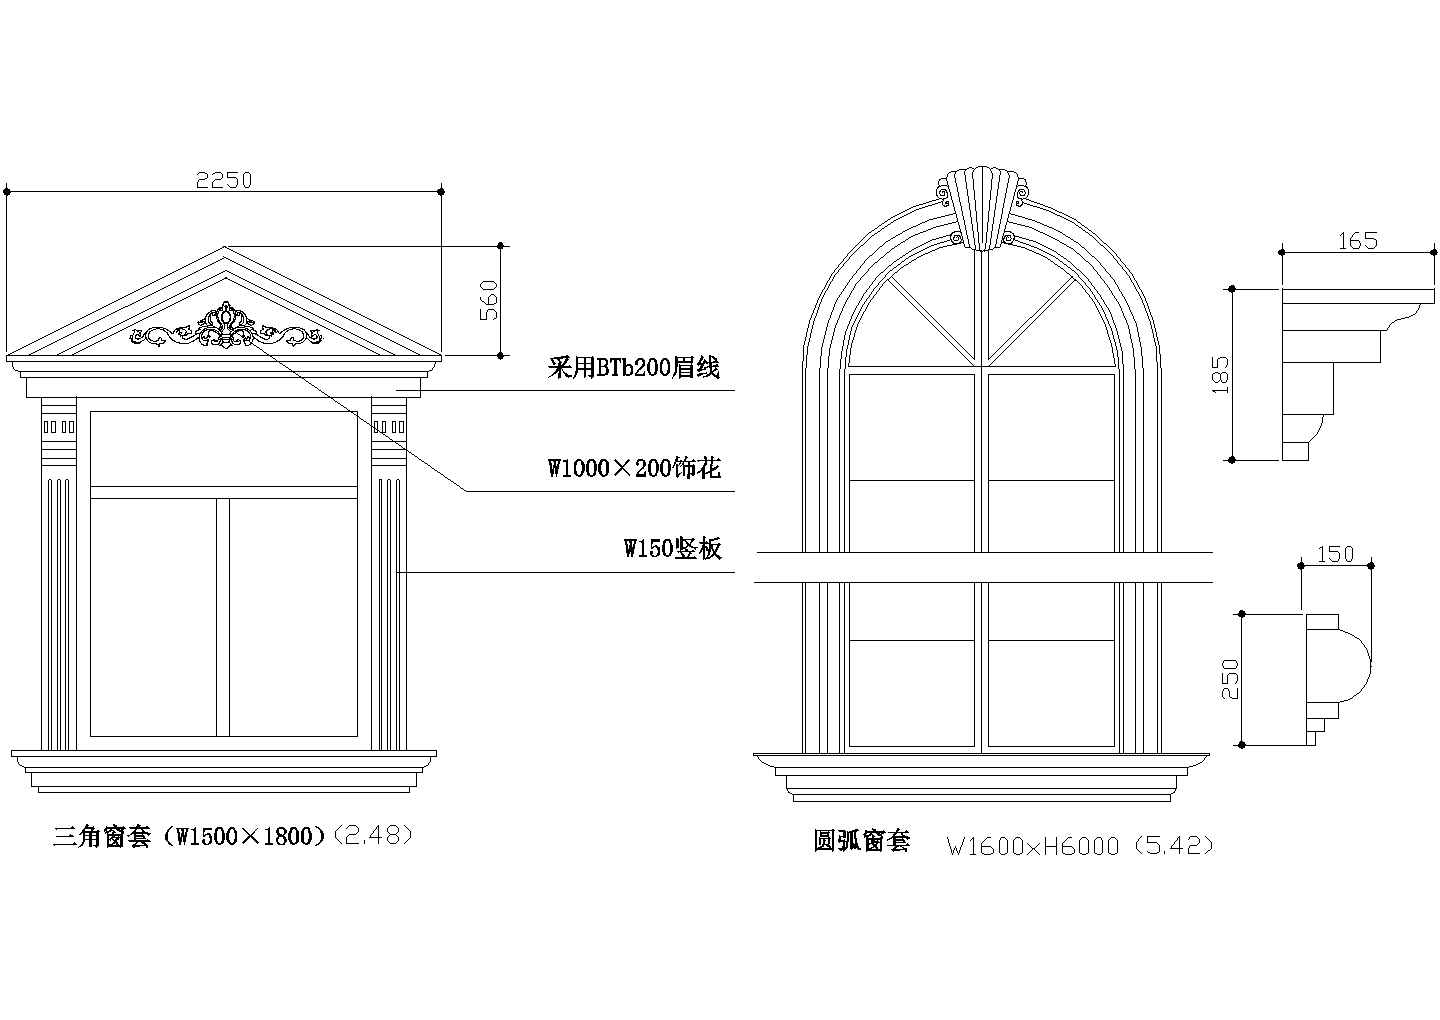 窗套模具|罗马窗套模具|欧式窗套模具工程案例 - 大唐稳江模具